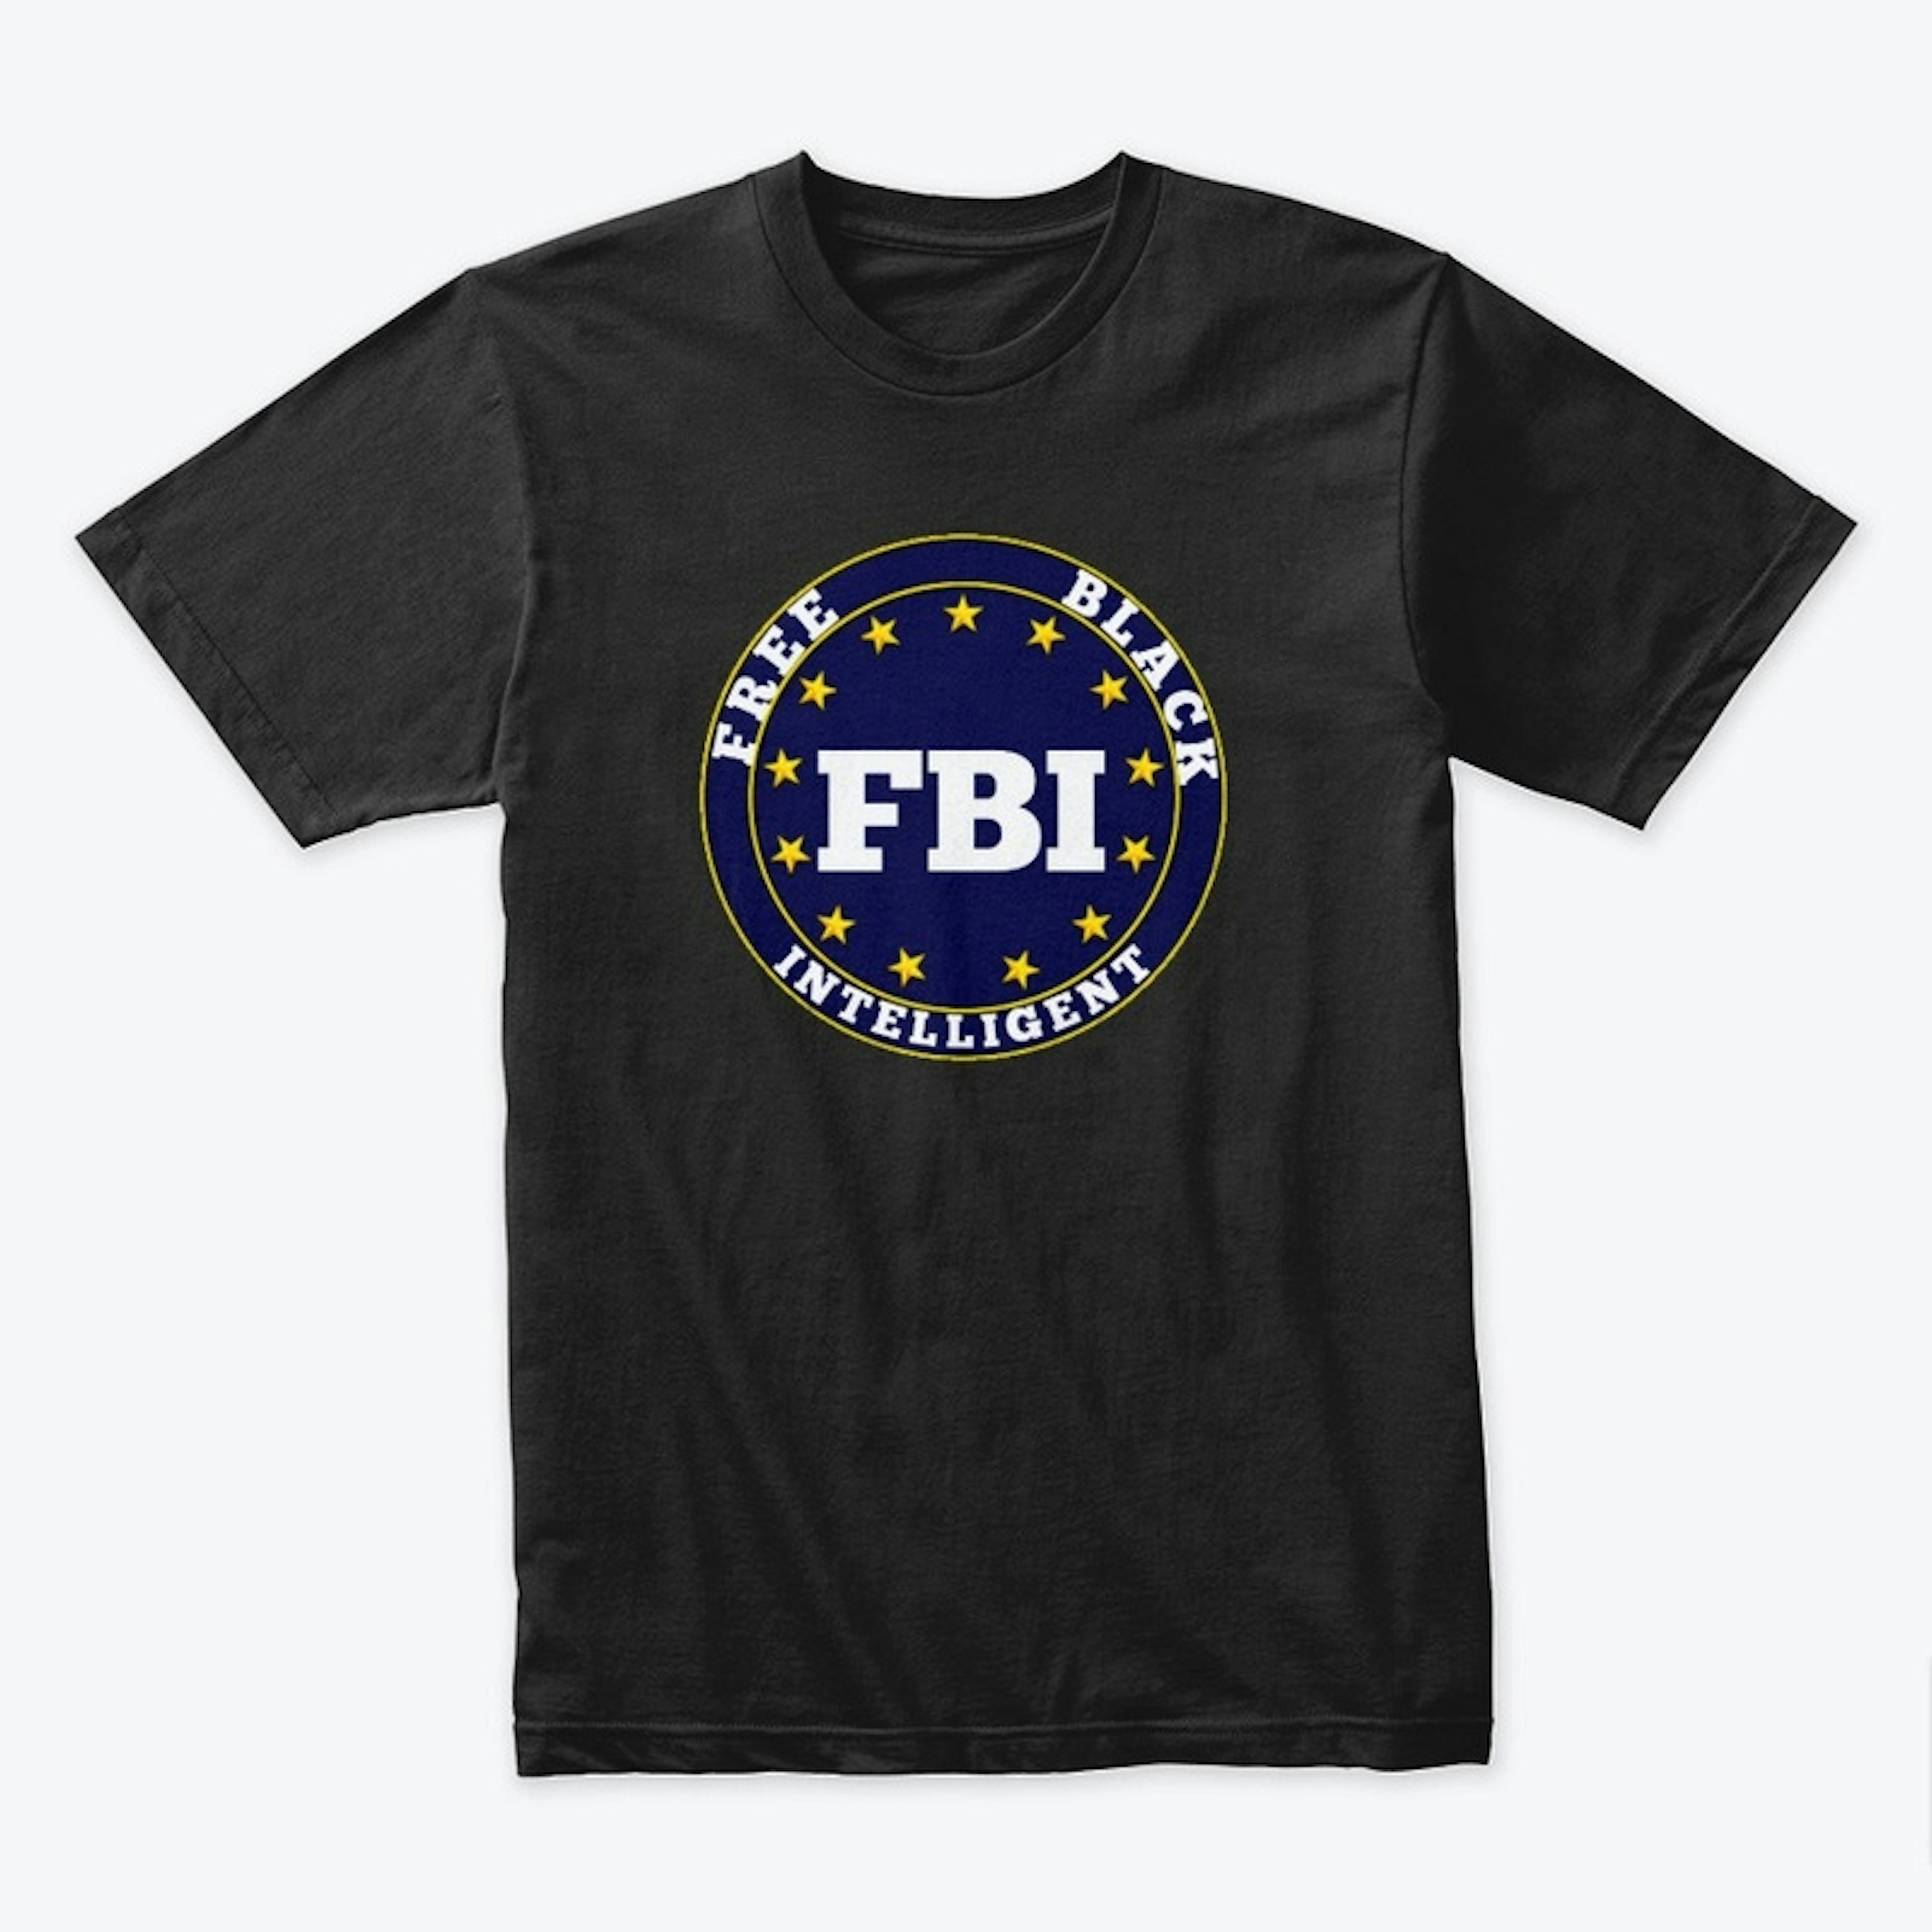 FBI (Free Black Intelligent)